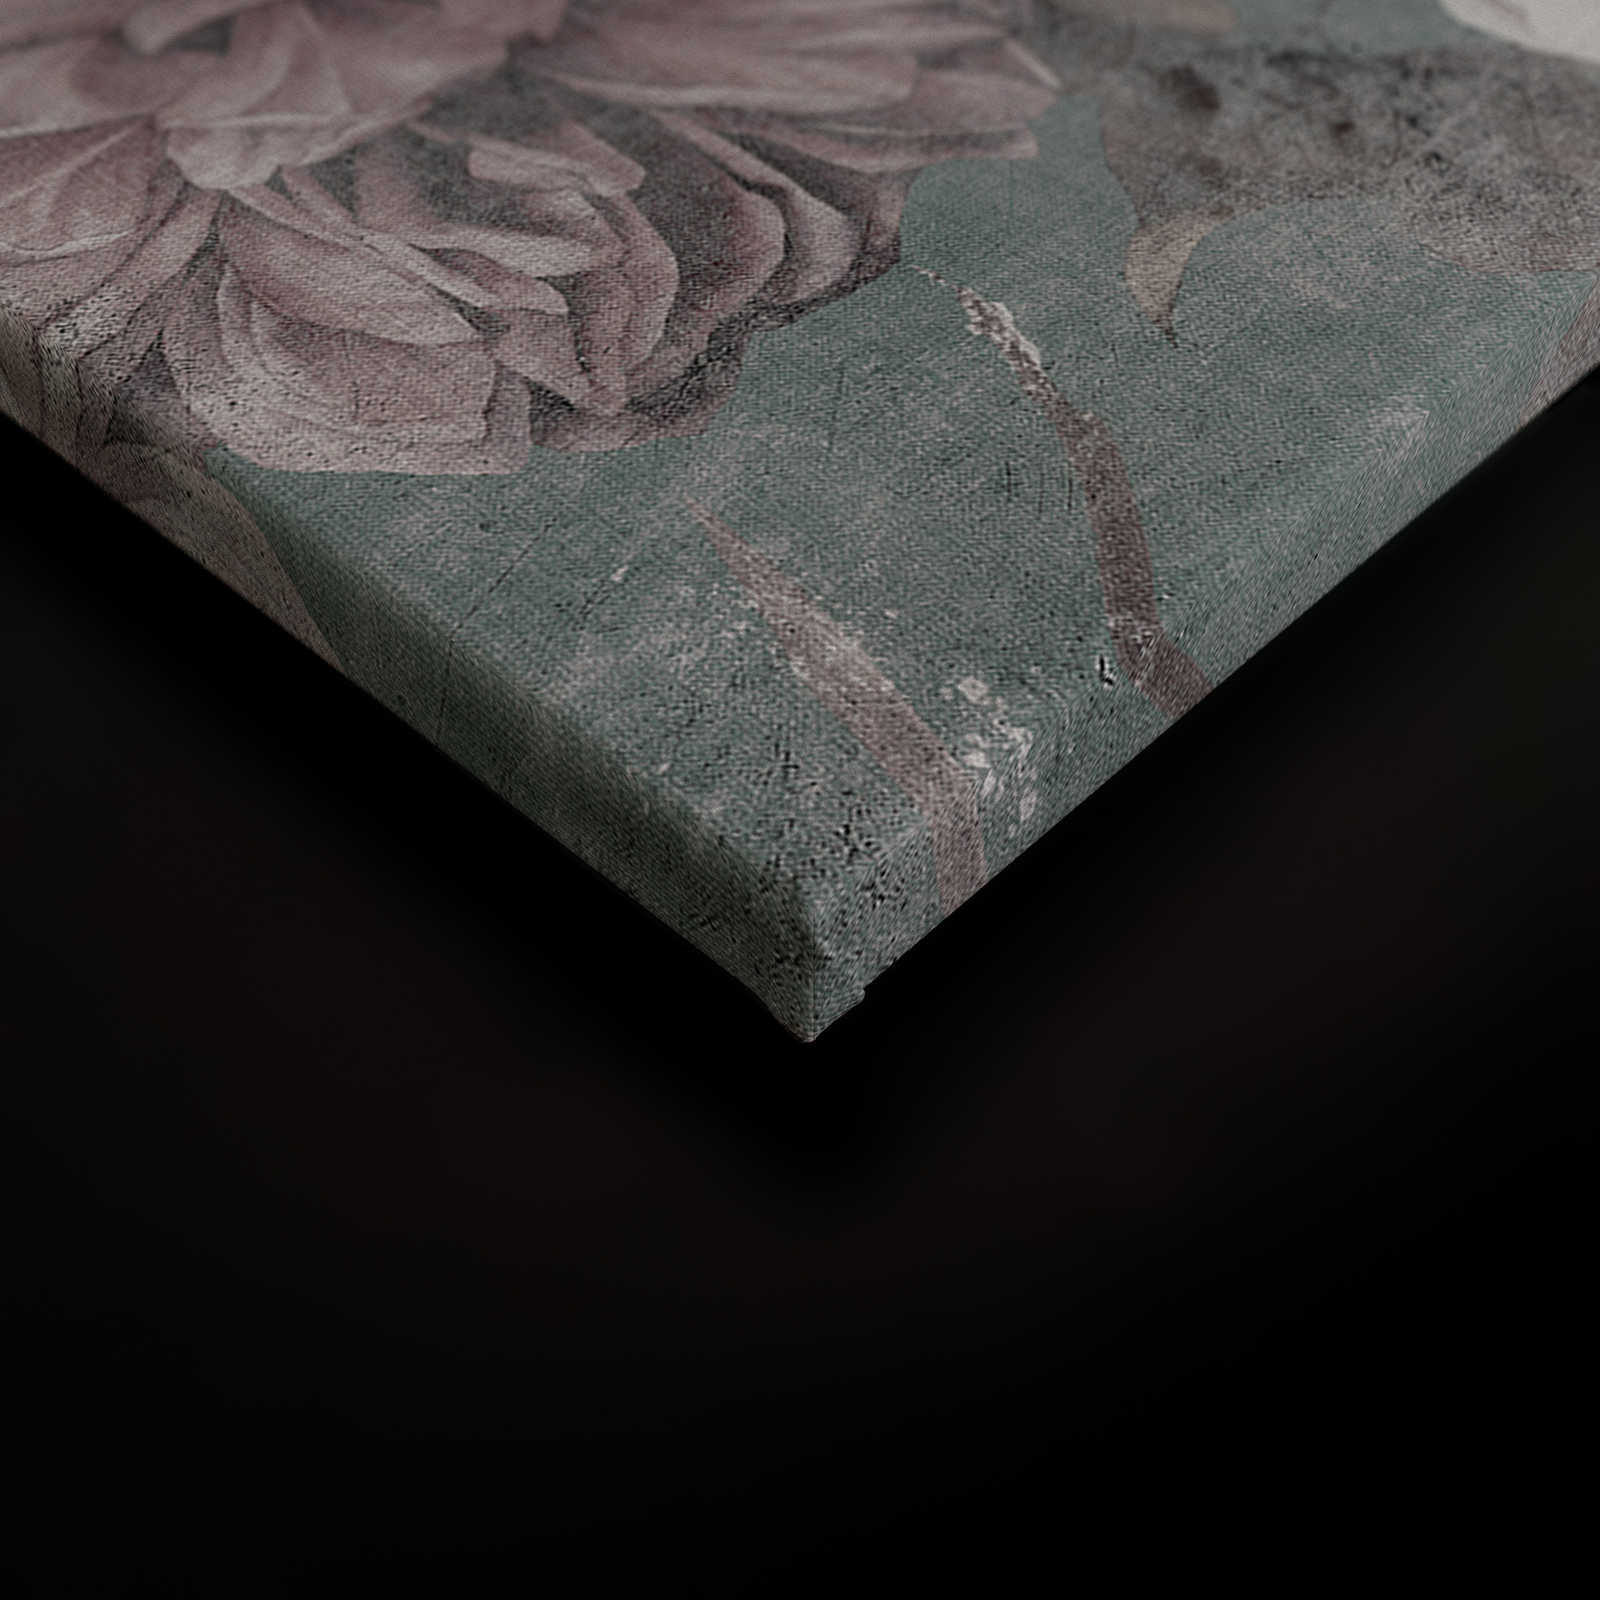             La Bella Addormentata 2 - Quadro su tela con petali di rosa in stile vintage - 0,90 m x 0,60 m
        